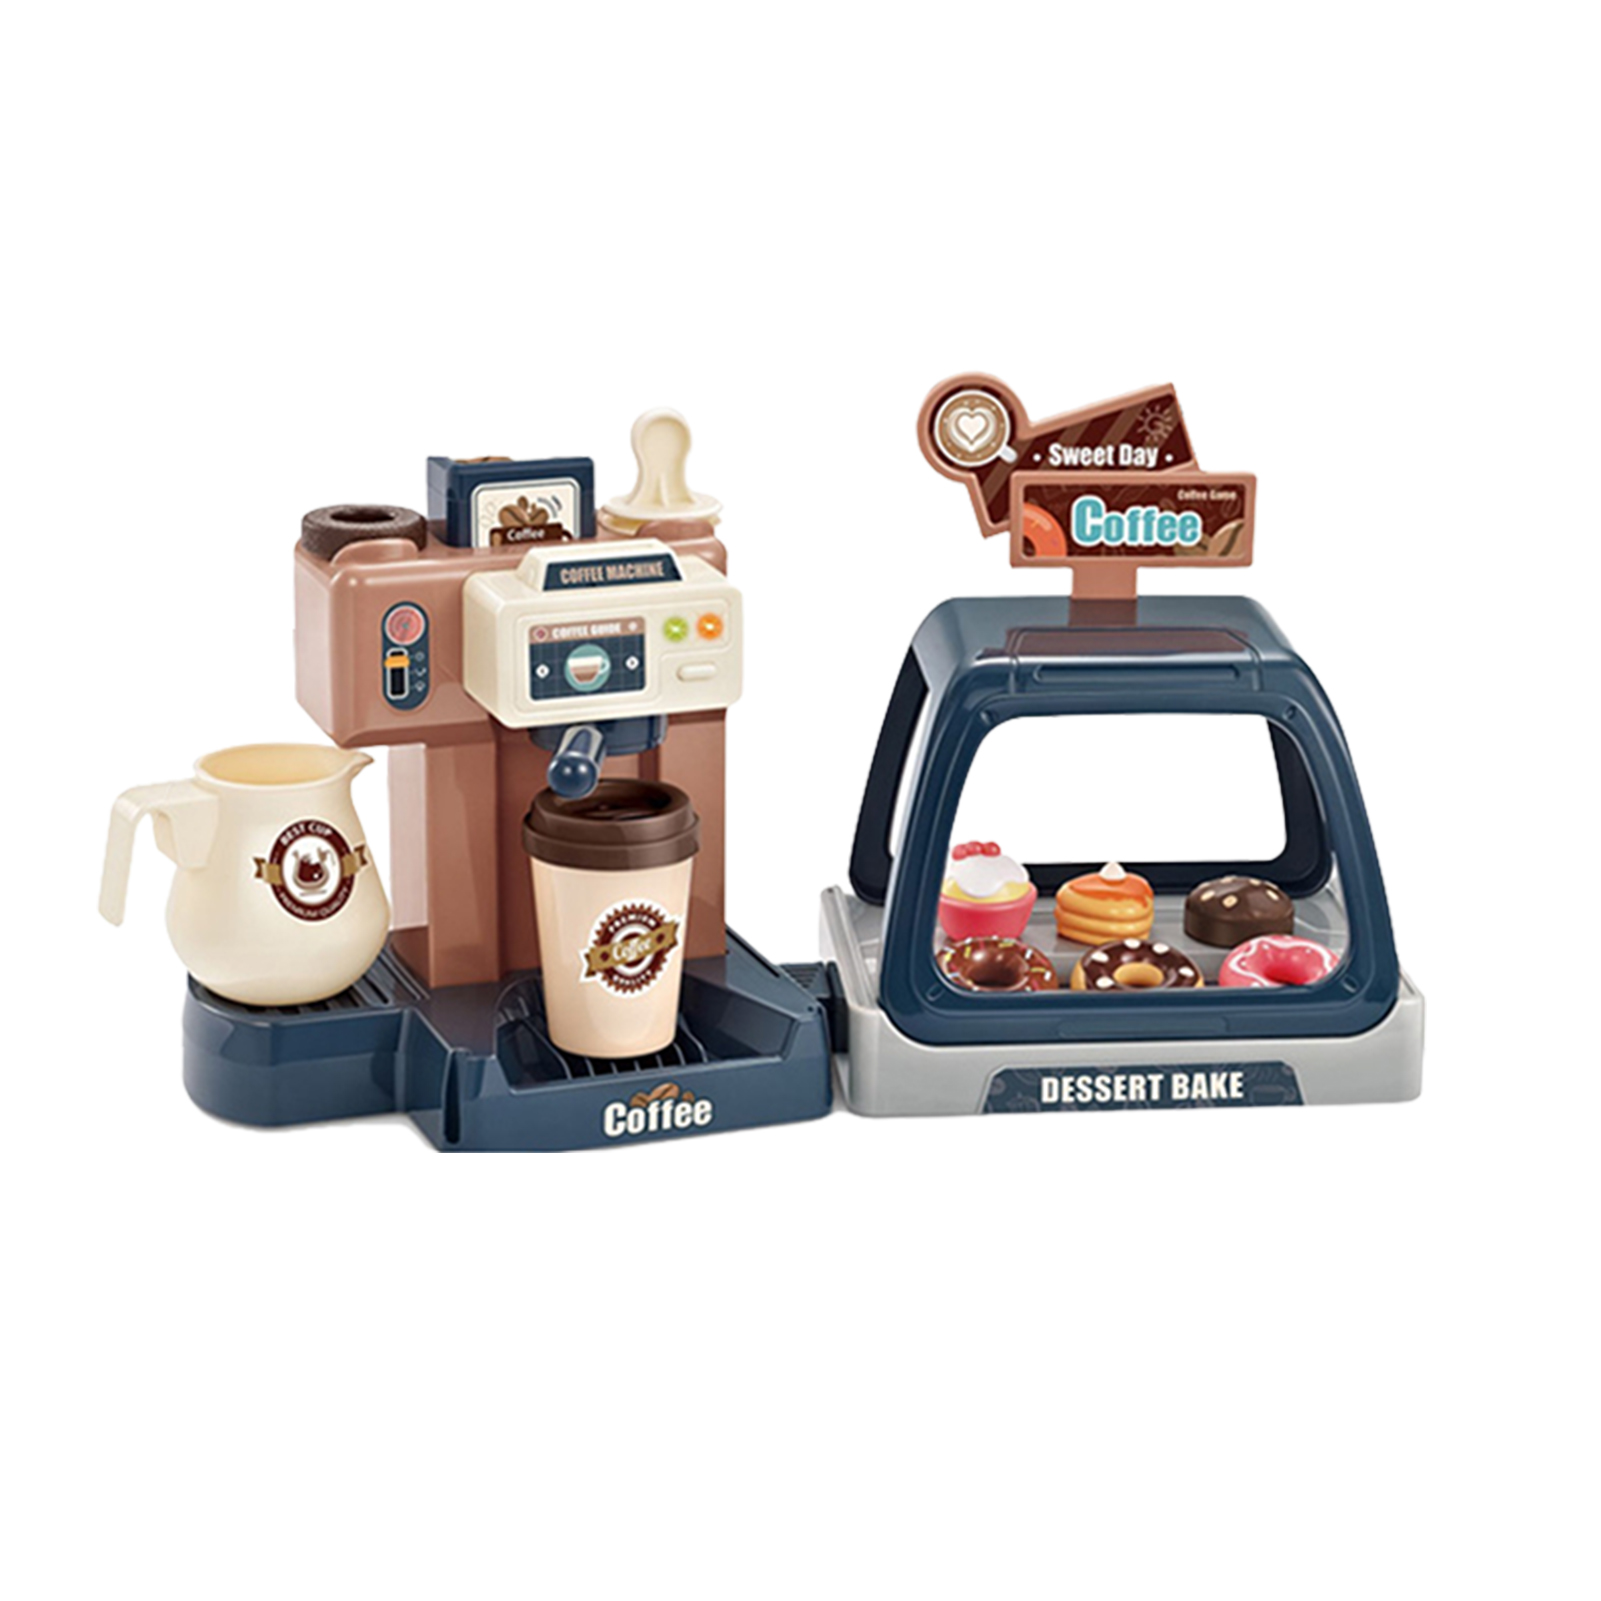 Pretend Play Kitchen Dessert For Kids Coffee Machine Toy Set Gift